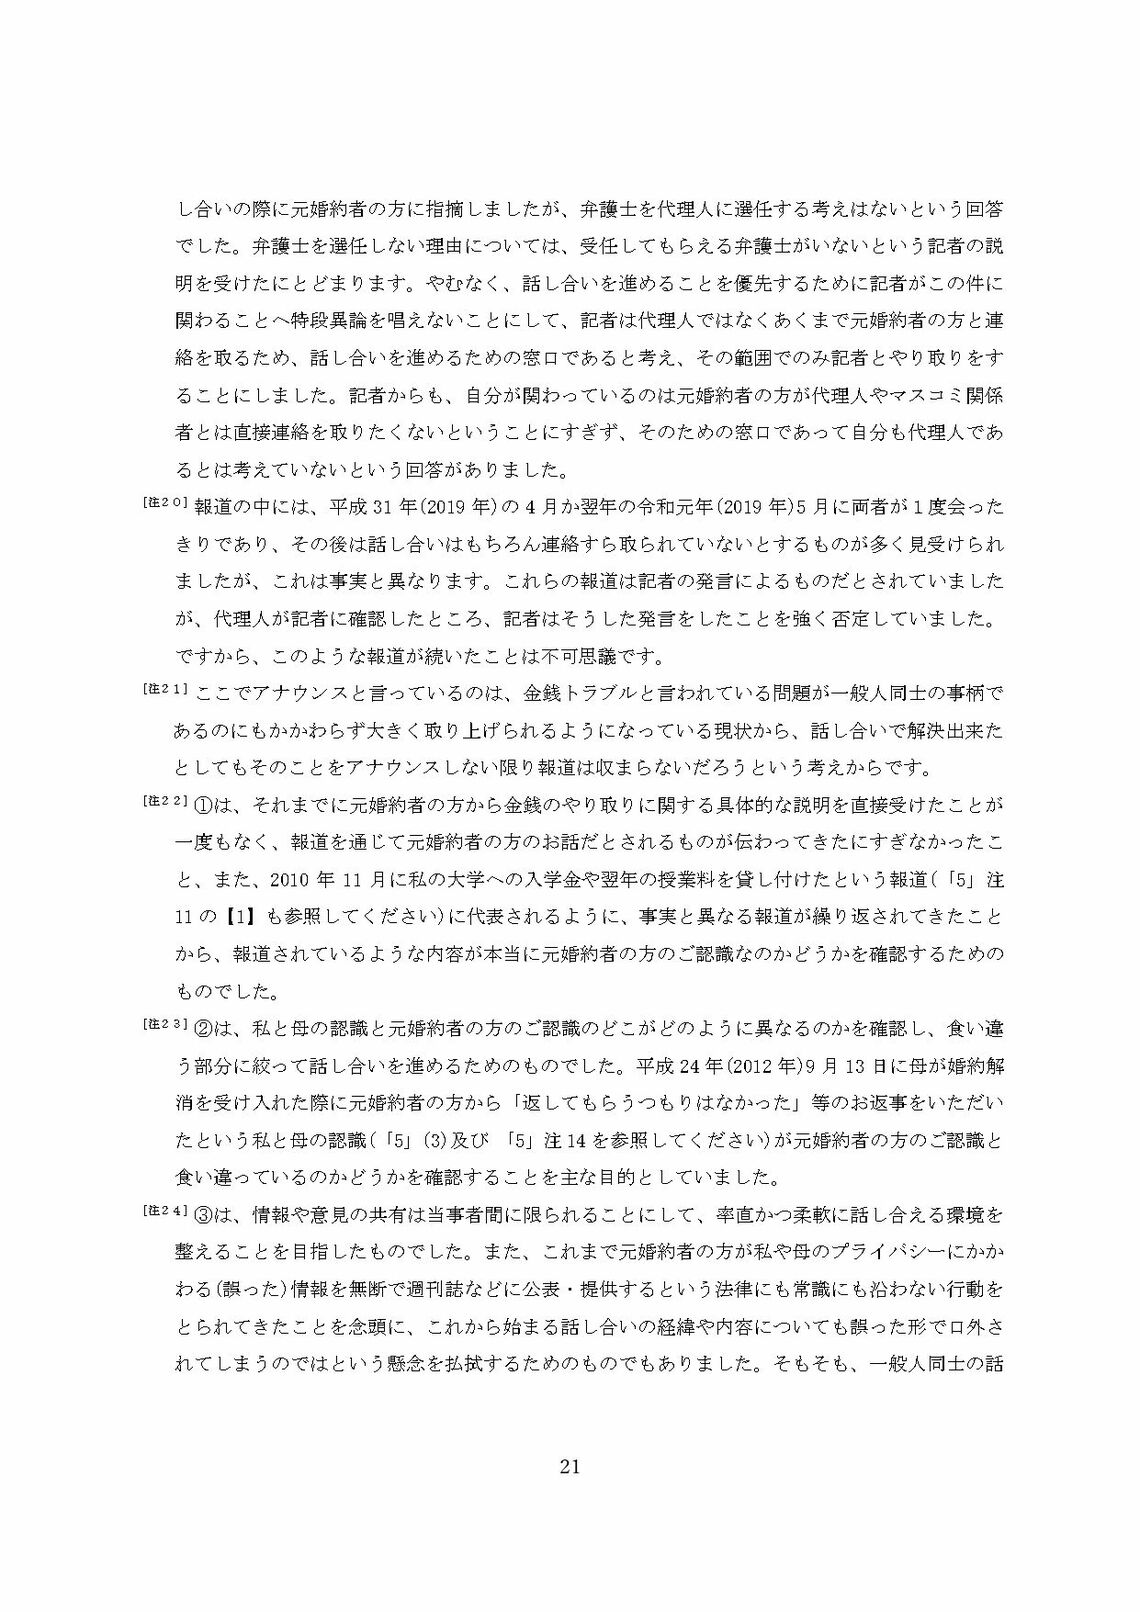 小室圭氏の代理人より届いた文書本文の脚注（21ページ目）（写真：週刊女性PRIME）